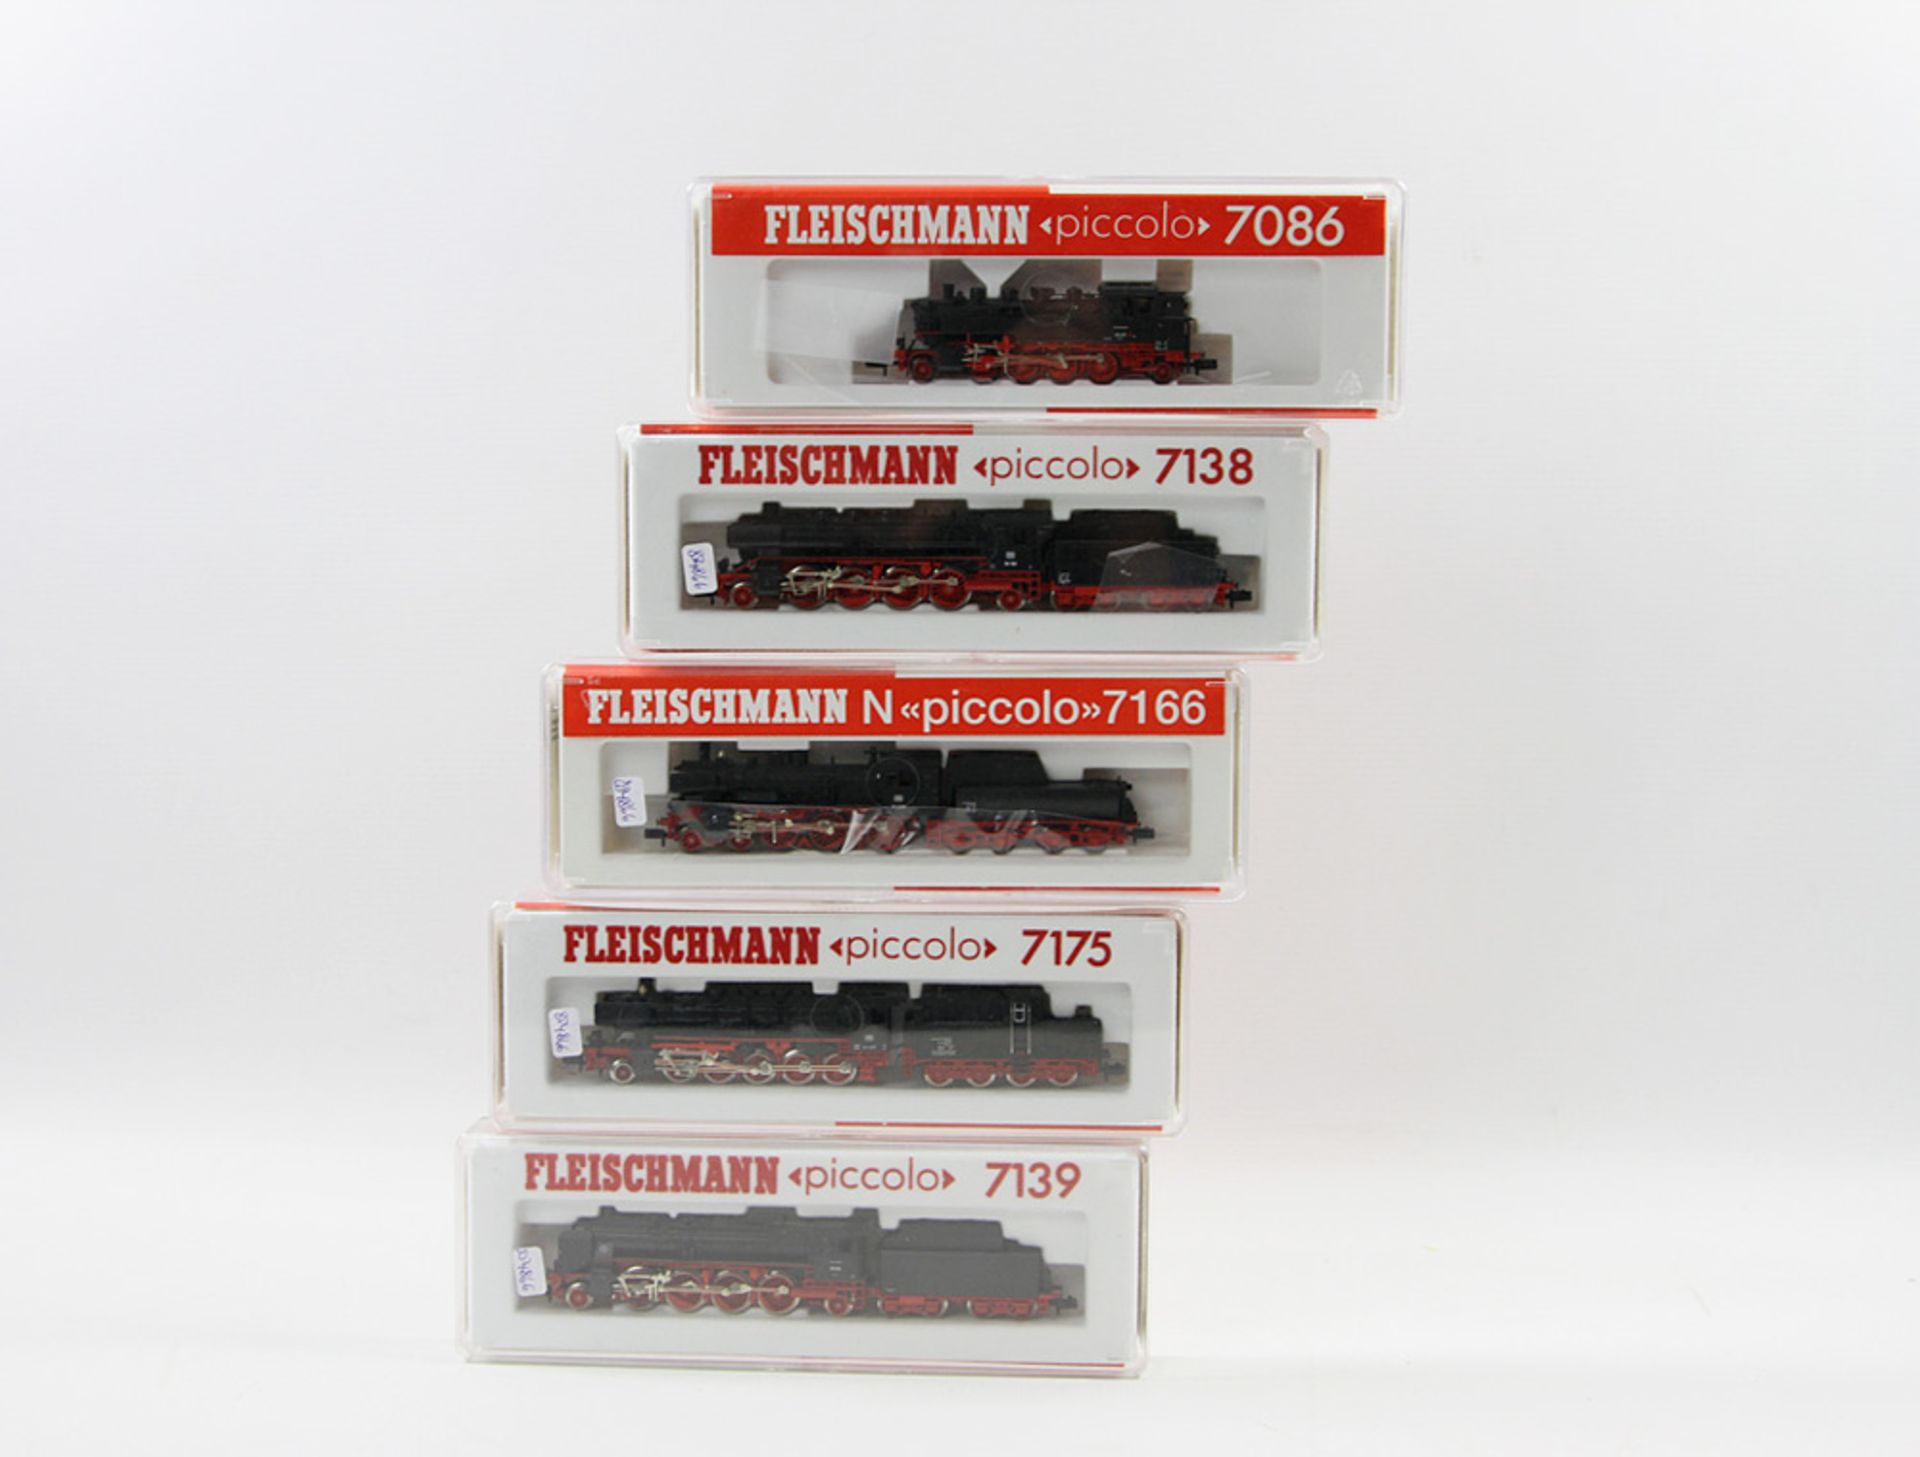 FLEISCHMANN "piccolo" fünf Lokomotiven 7139, 7175, 7166, 7138 und 7086, Spur N, bestehend aus Nrn.